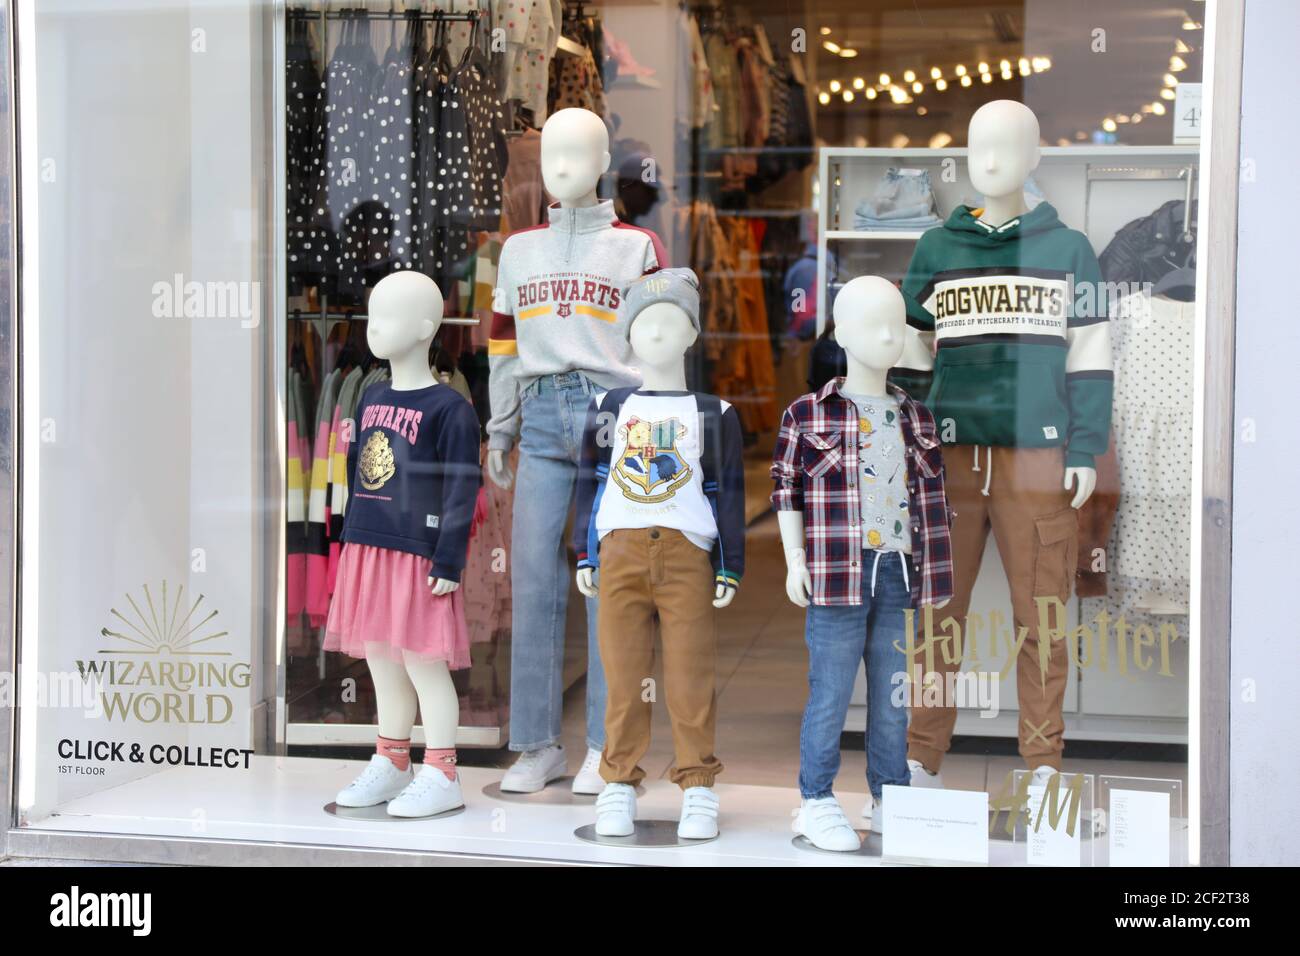 Harry Potter inspirierte Kinderkleidung in H & M bei Stroget In Kopenhagen  Stockfotografie - Alamy